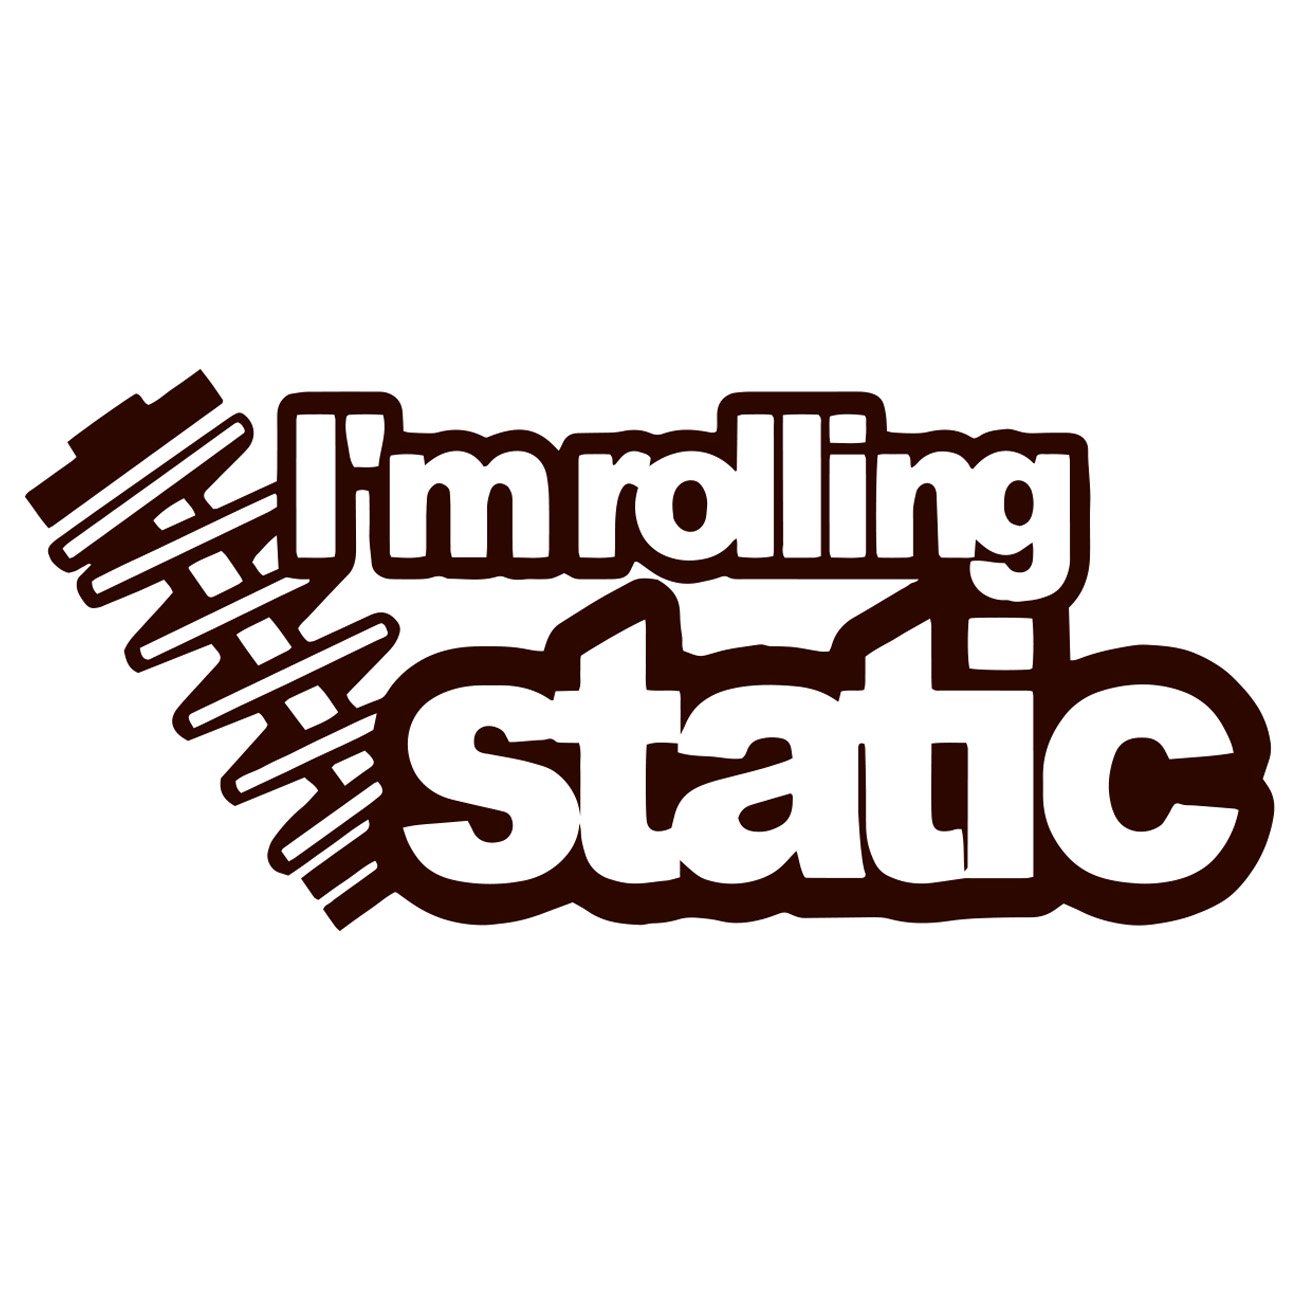 I'm rolling static